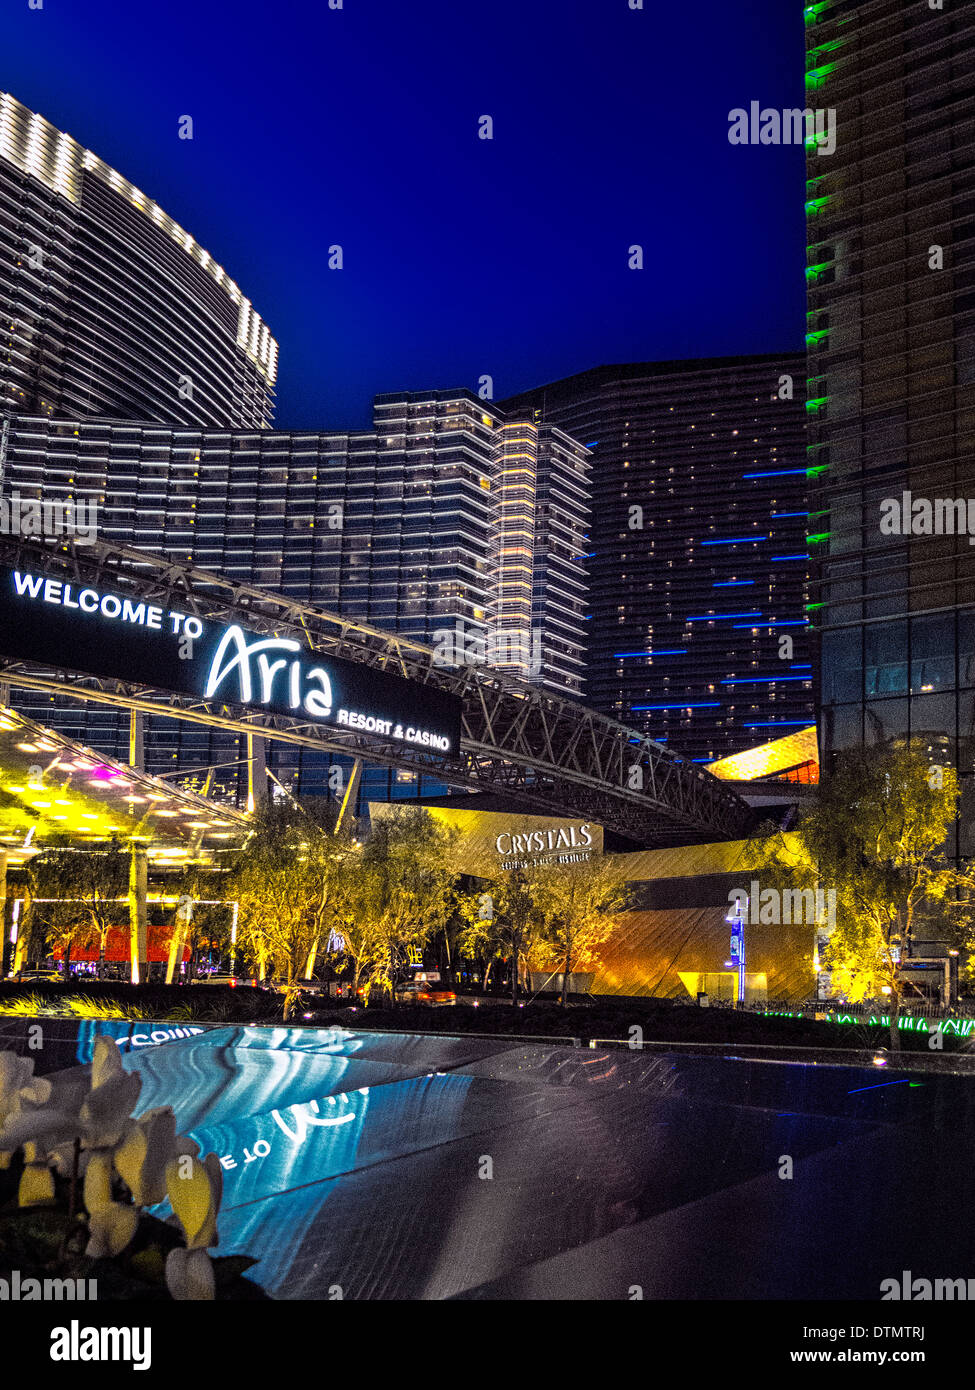 Une nuit spectaculaire vue en temps réel de l'Aria Resort and Casino, Las Vegas Nevada Banque D'Images